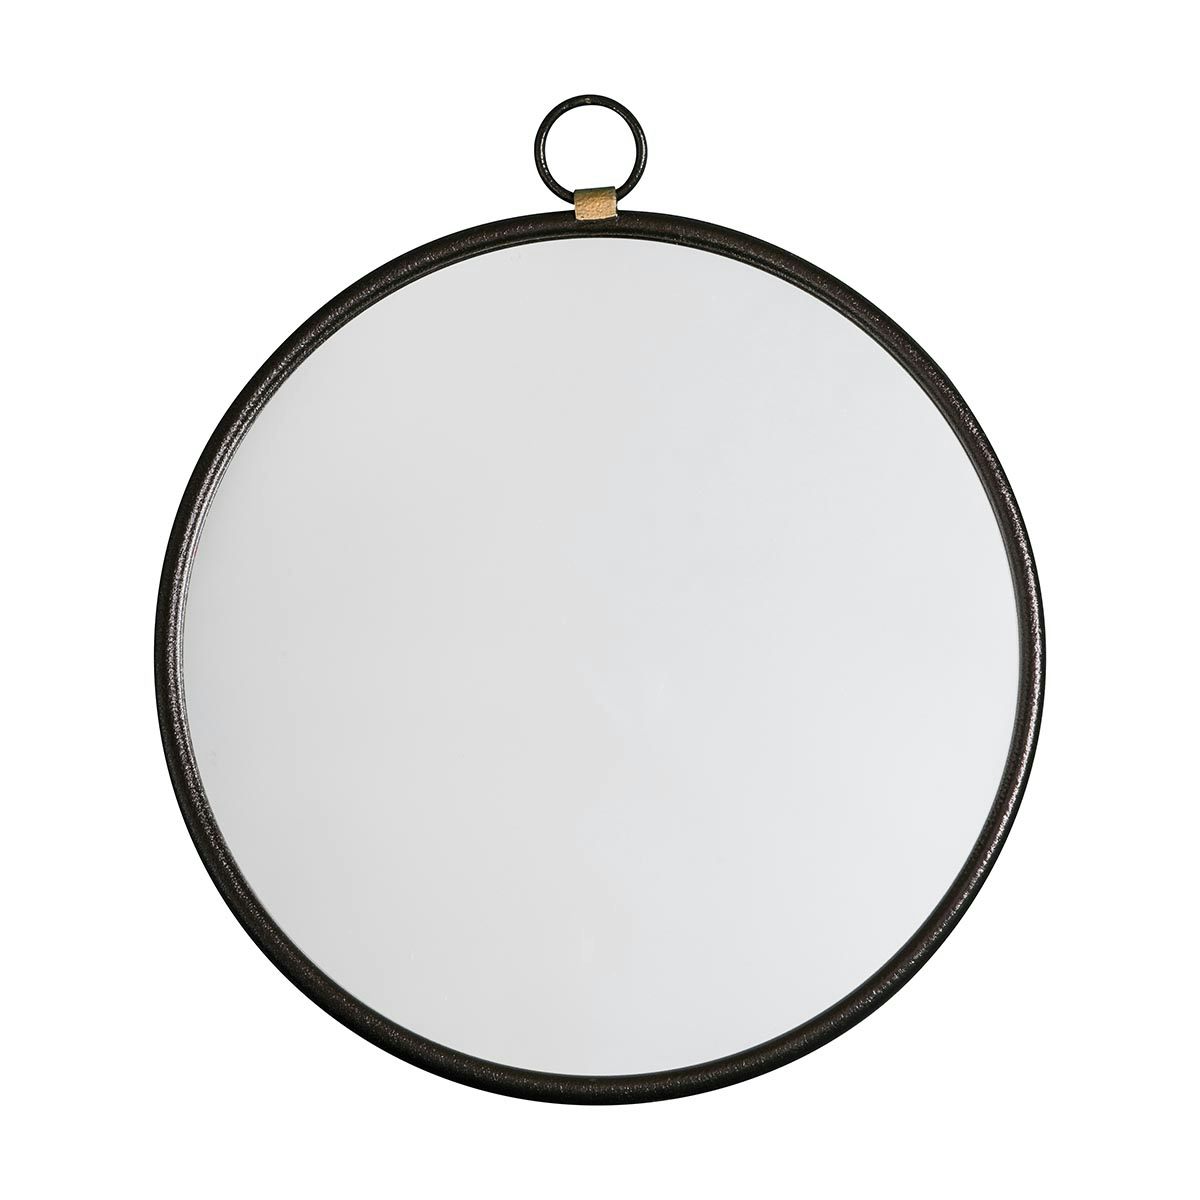 Accents Bayswater round black mirror 700 x 610mm